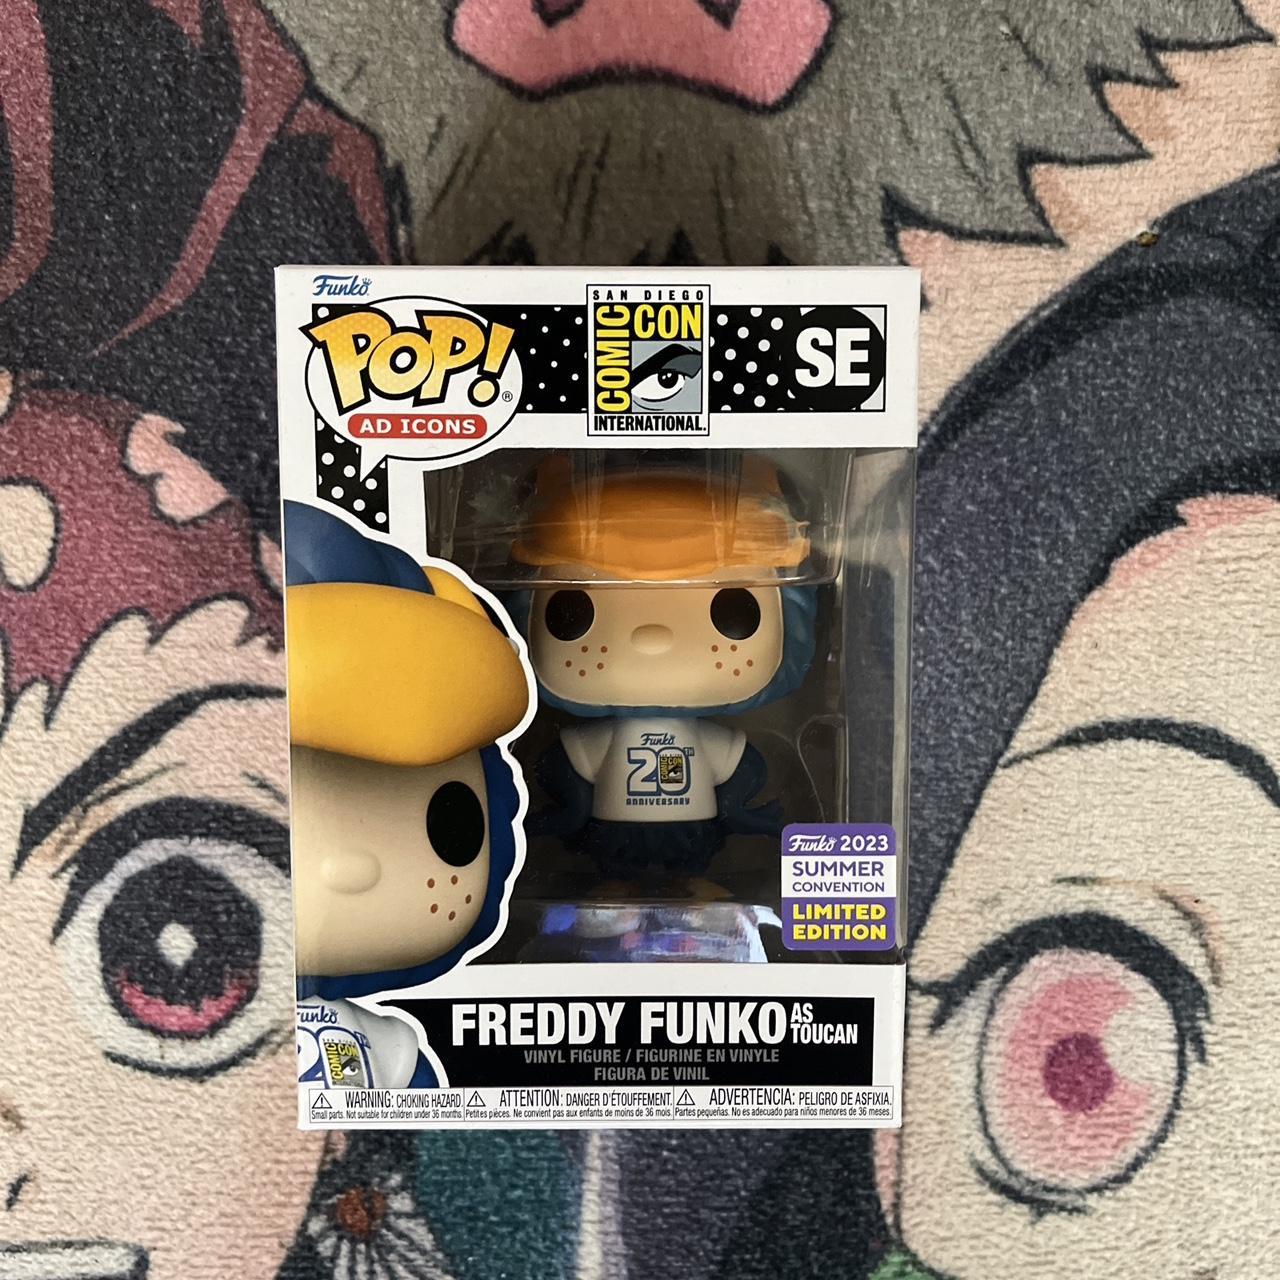 Freddy Funko As Toucan